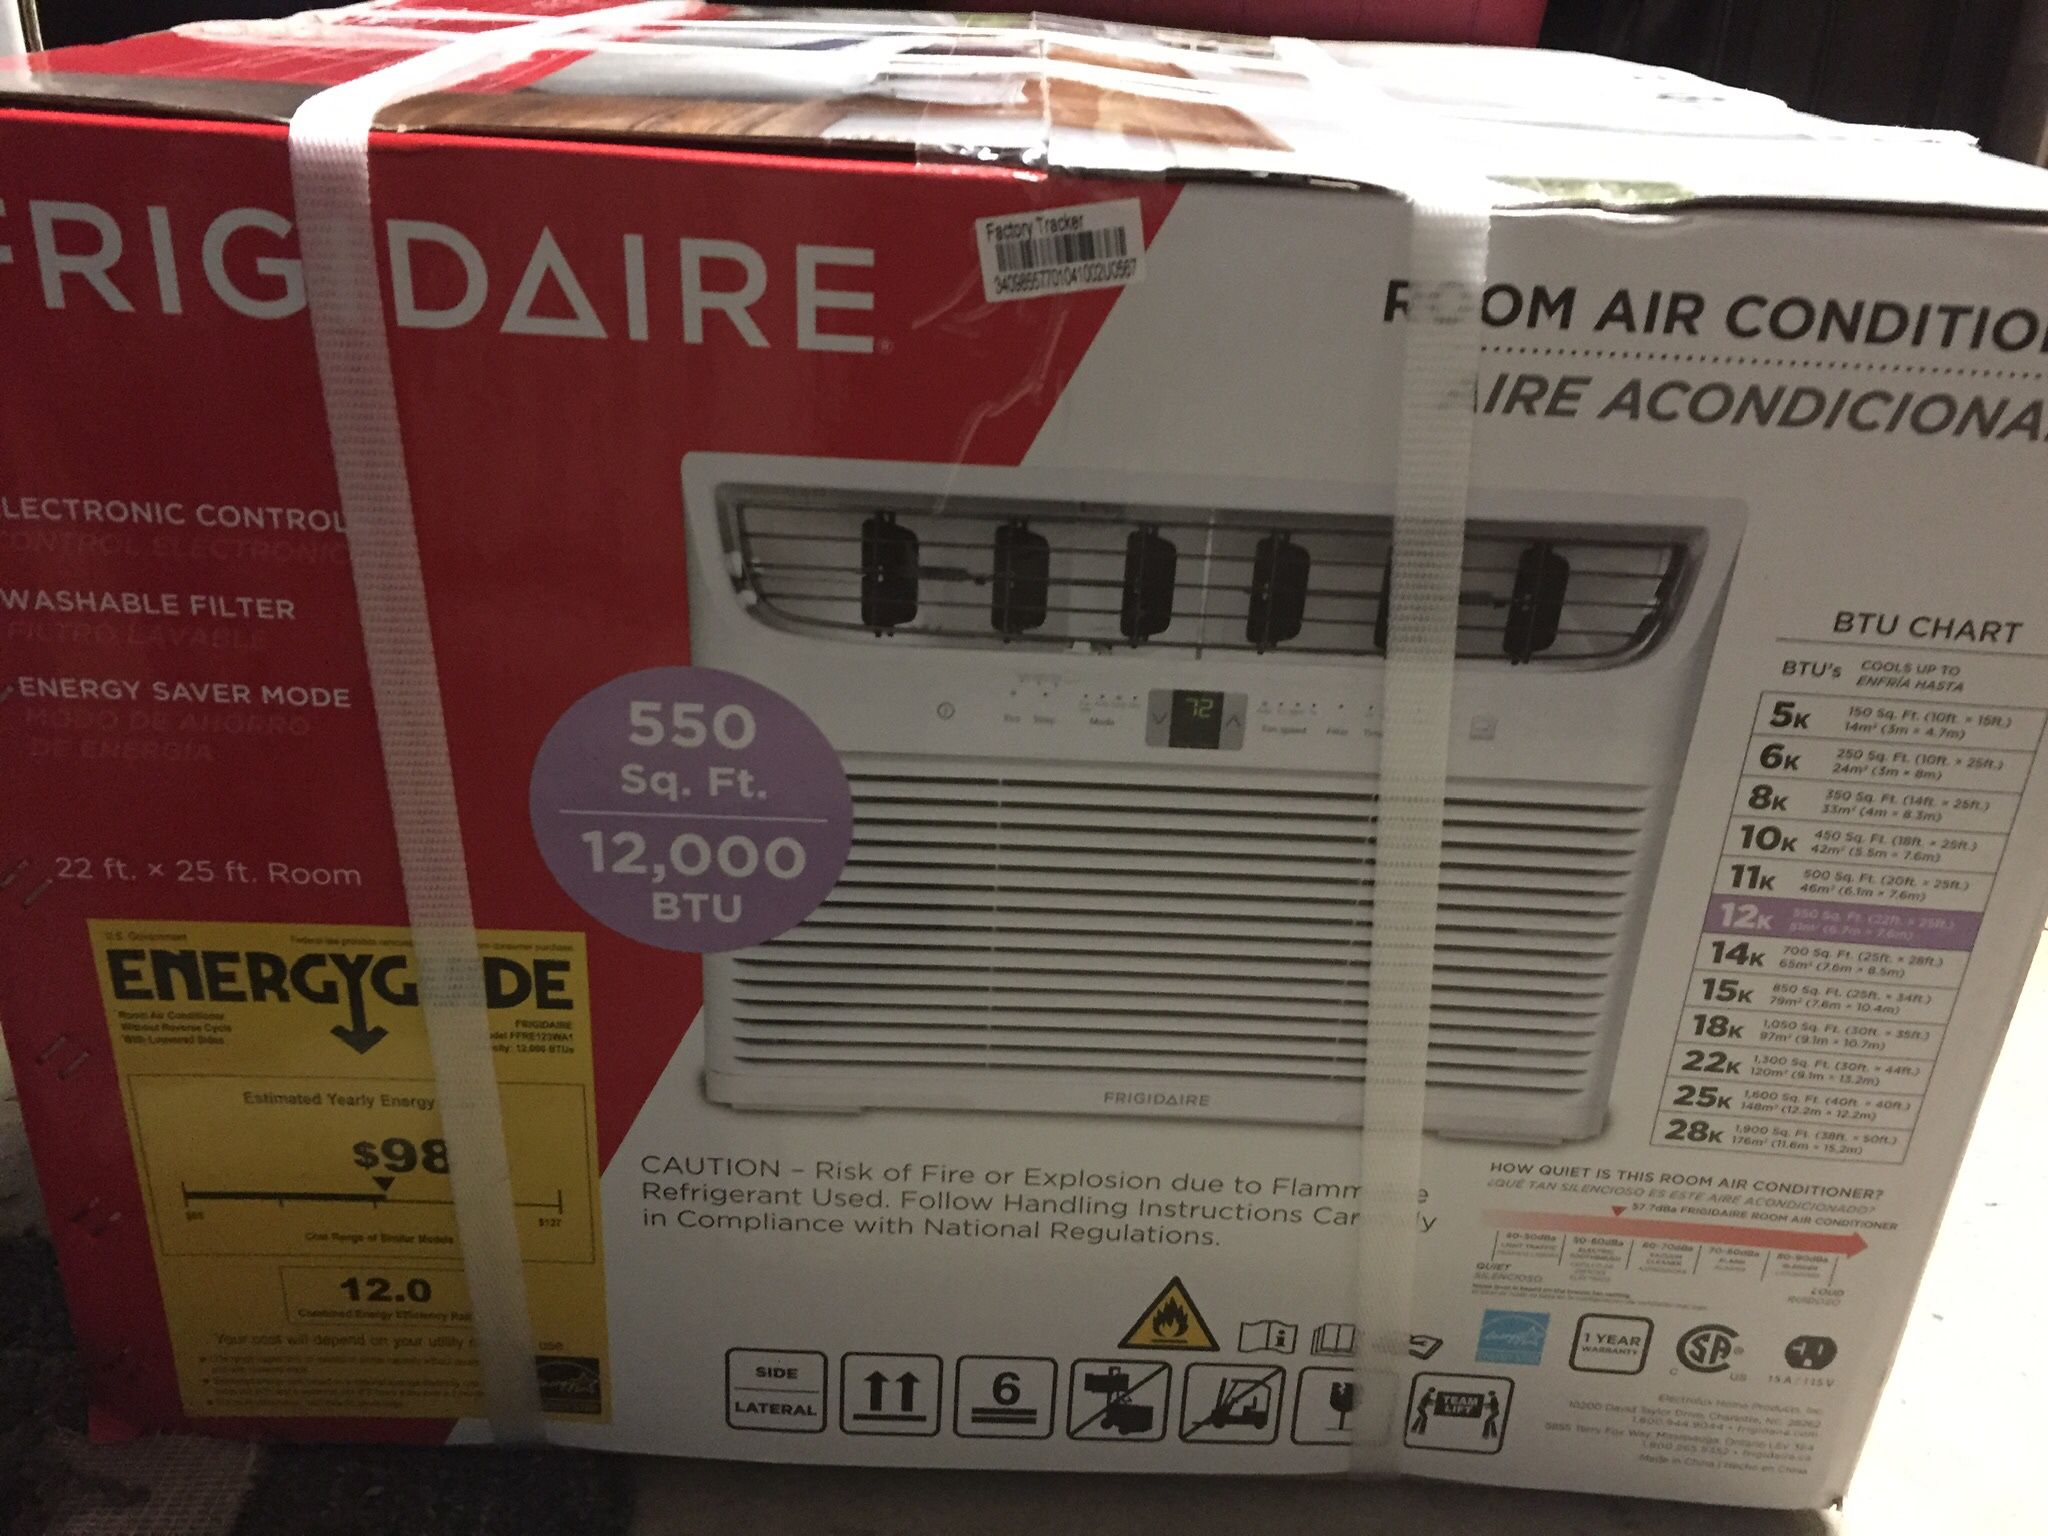 NEW 12,000 BTU air conditioner